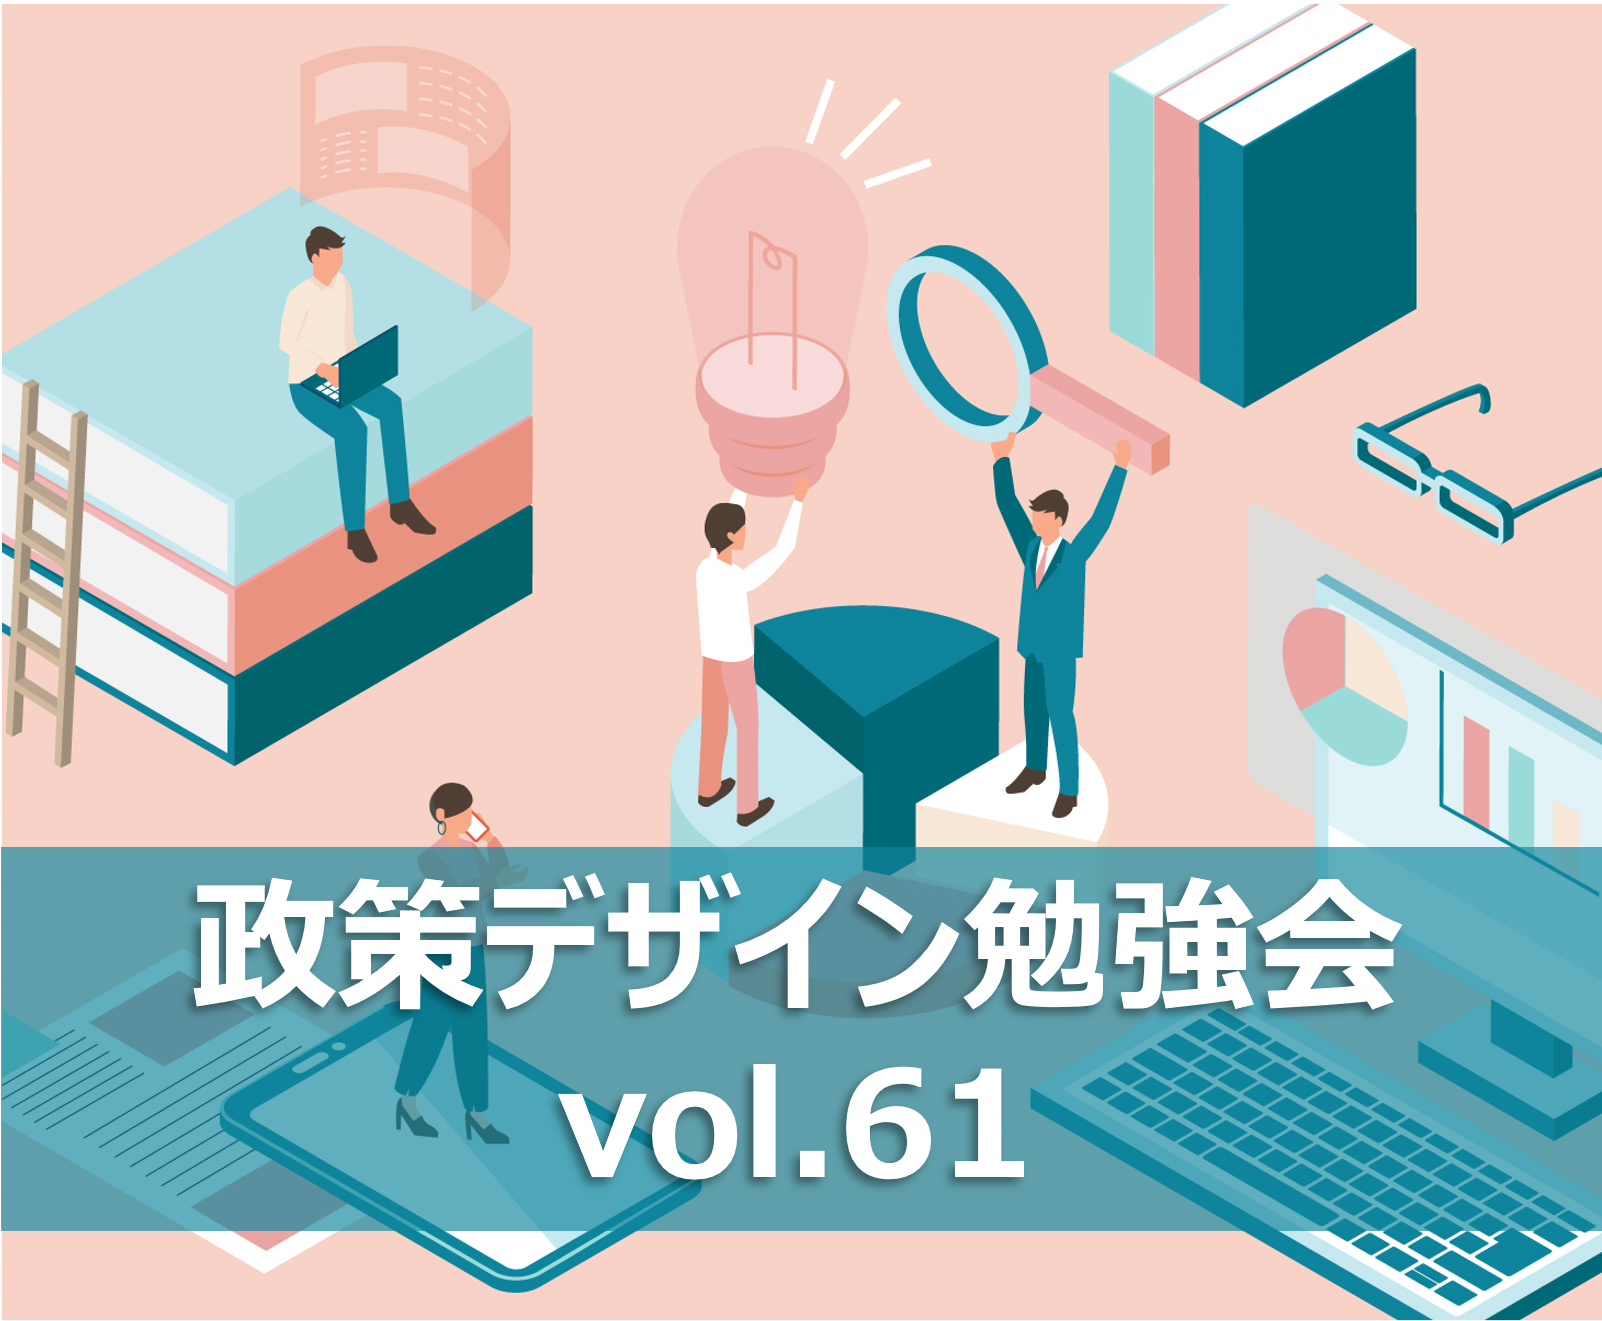 【政策デザイン勉強会vol.61】横浜市におけるWeb3.0を活用した地域課題解決を考える その2